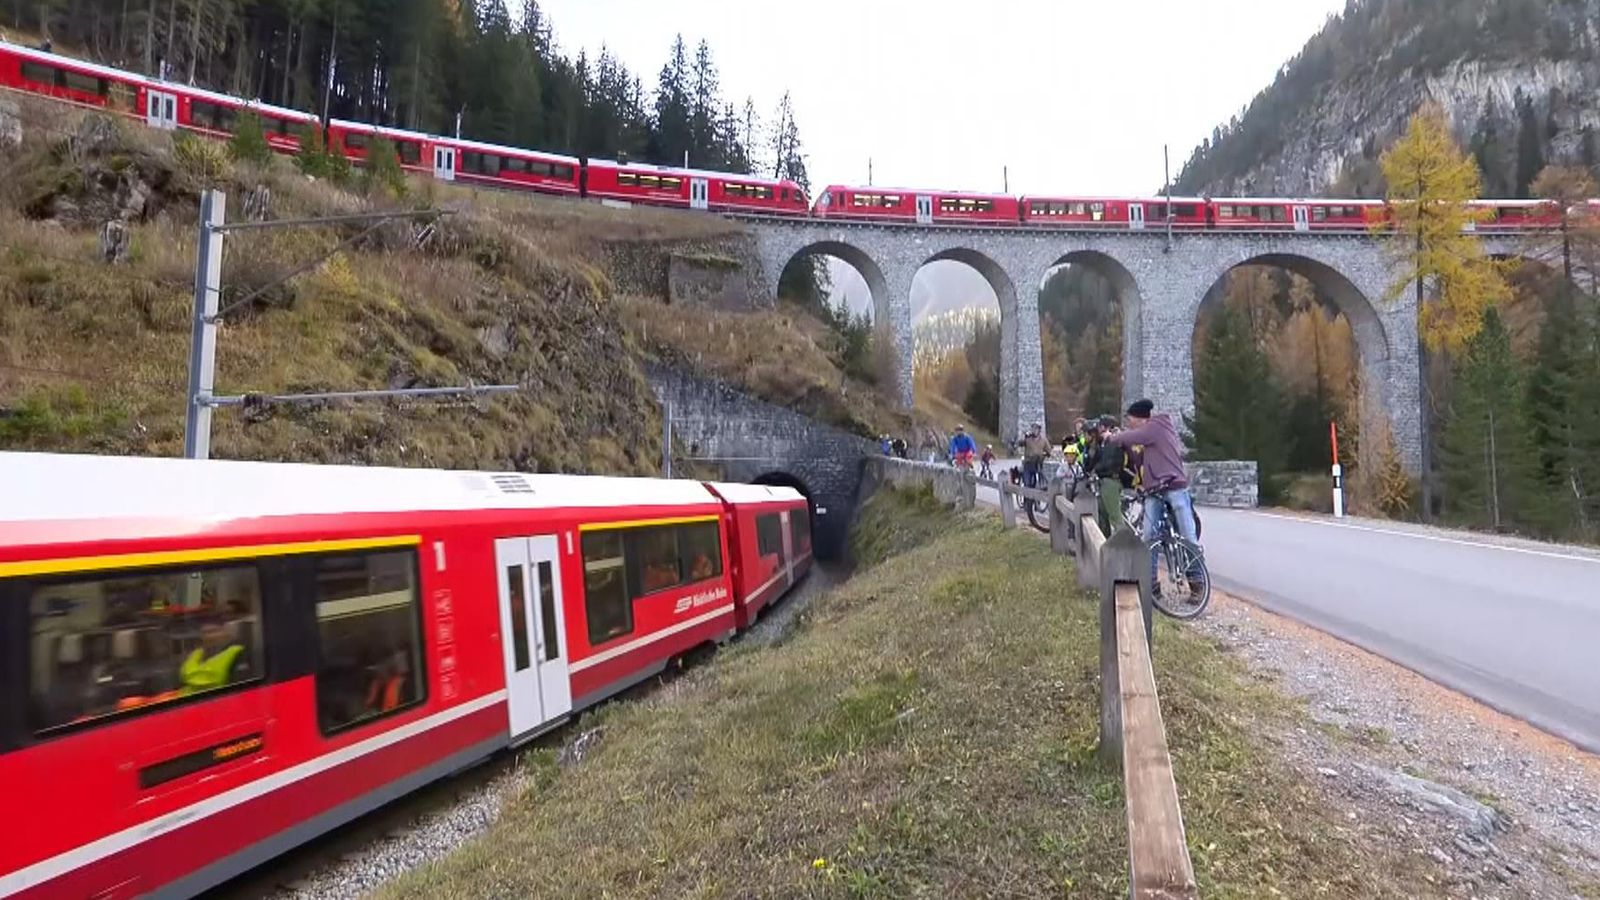 World longest train in Switzerland breaks the world record